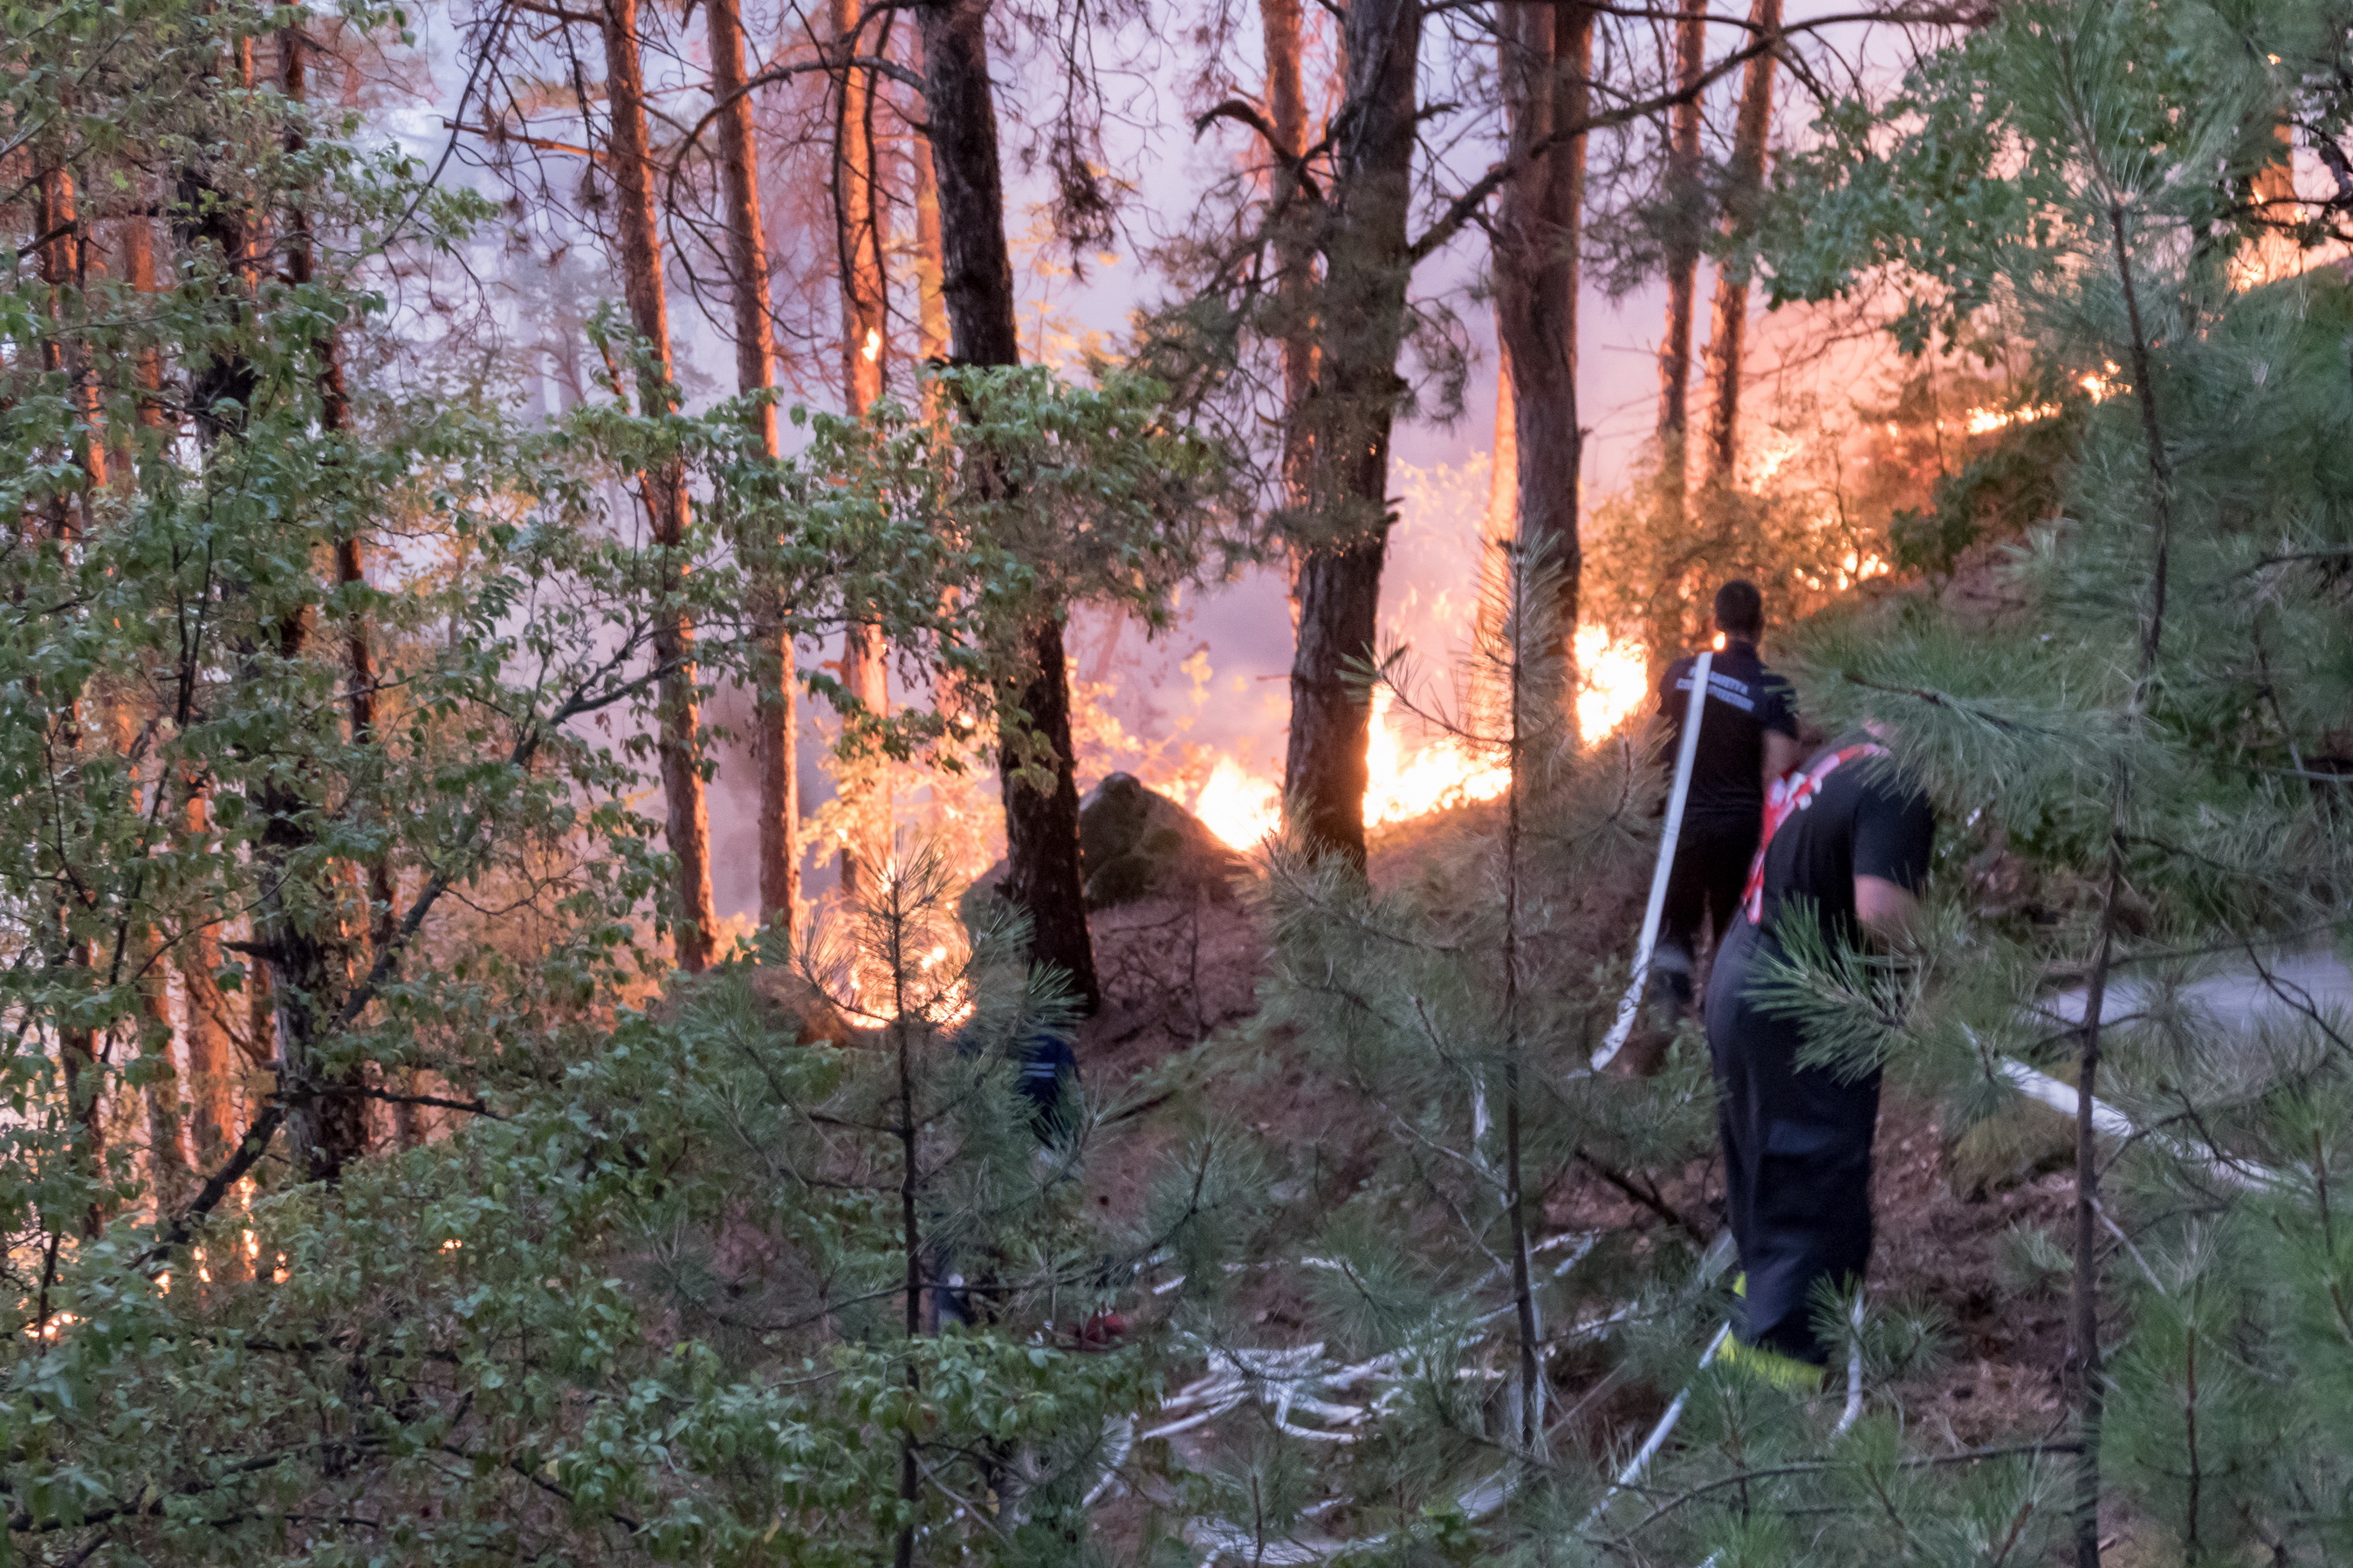 Близо 16 000 дка изгорели гора, треви и храсти, между 12 и 15 милиона лева ще струва възстановяването на гората и 50 години време, за да изглежда както до обедните часове в четвъртък, когато пламна пожарът в Кресненското дефиле. Това е равносметката на четвъртия ден от борбата със стихията. Два вертолета на армията помагат в гасенето, както и стотици пожарникари, военни, доброволци.